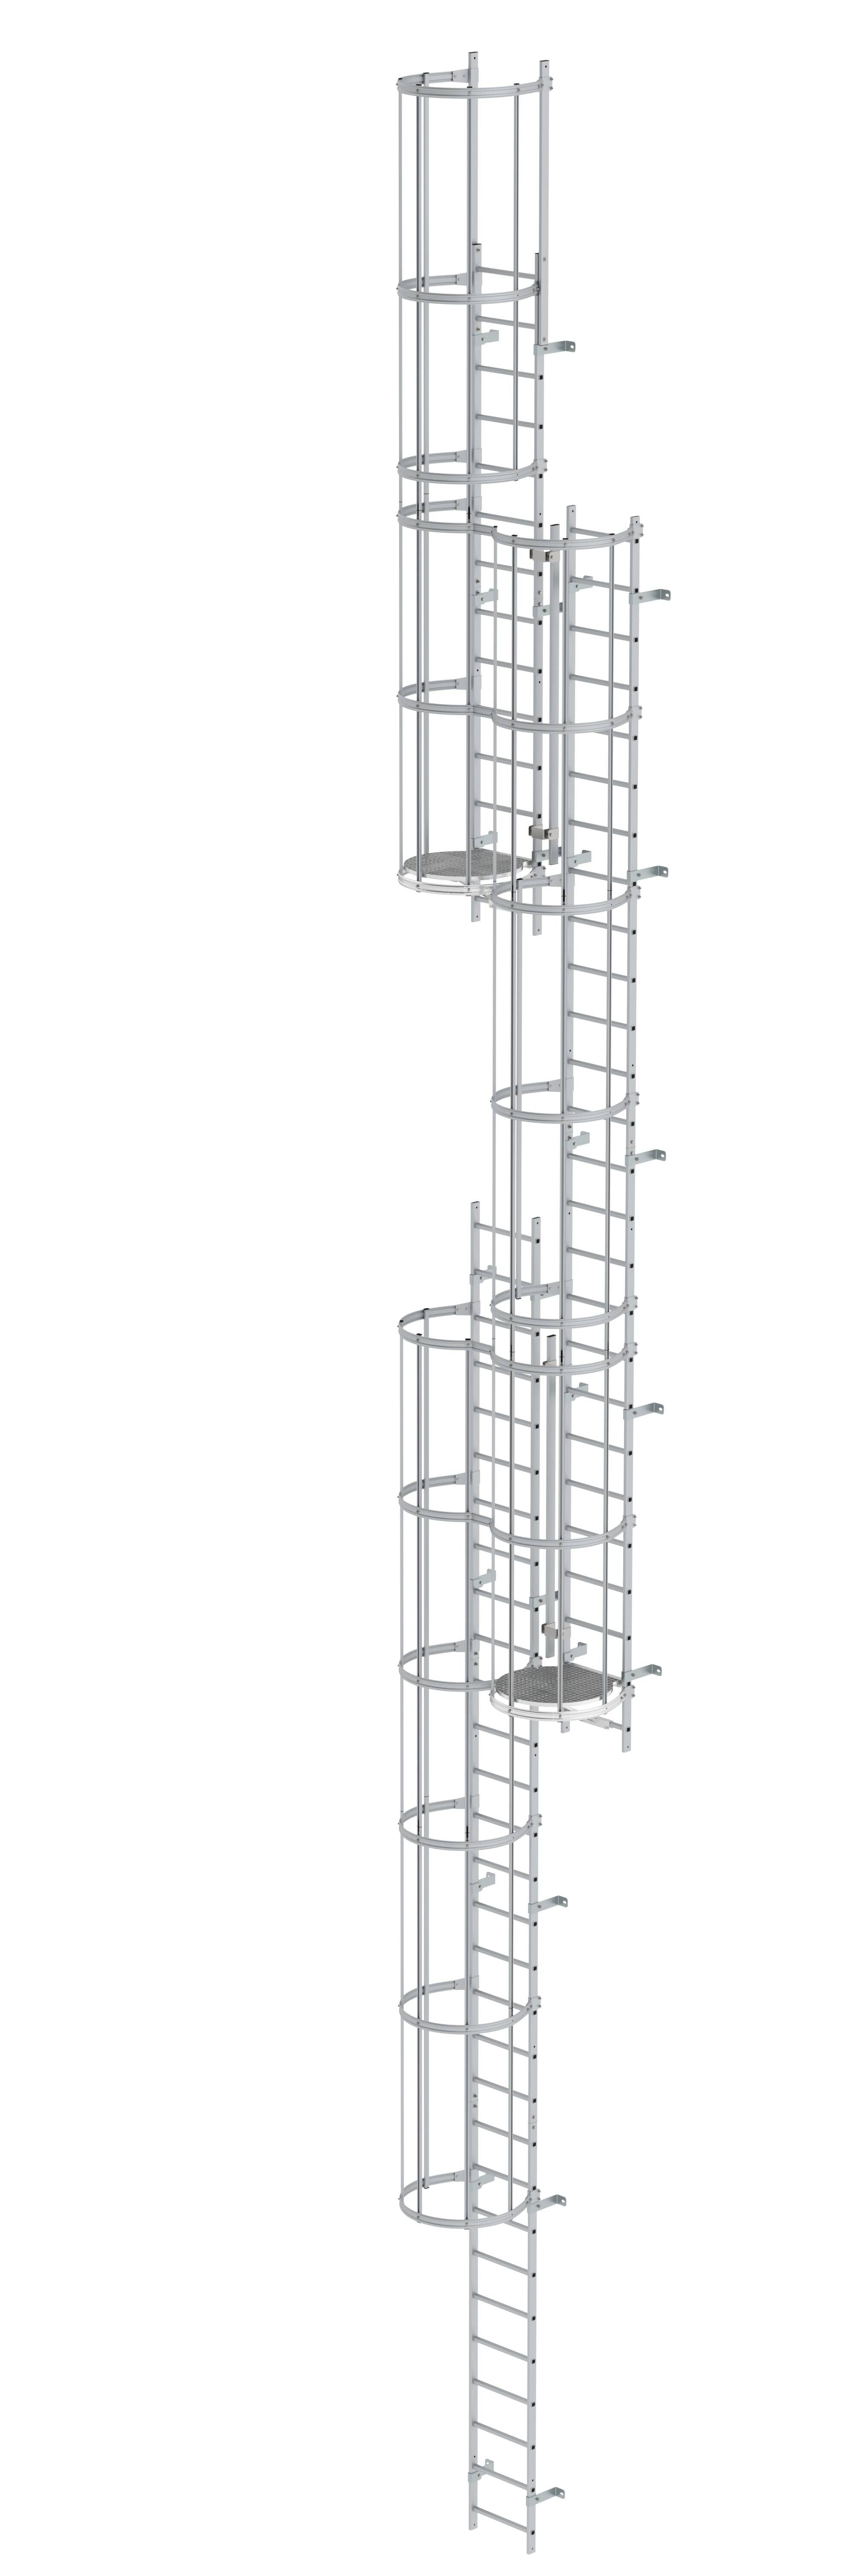 Mehrzügige Steigleiter mit Rückenschutz (Maschinen) Aluminium eloxiert 15,20m